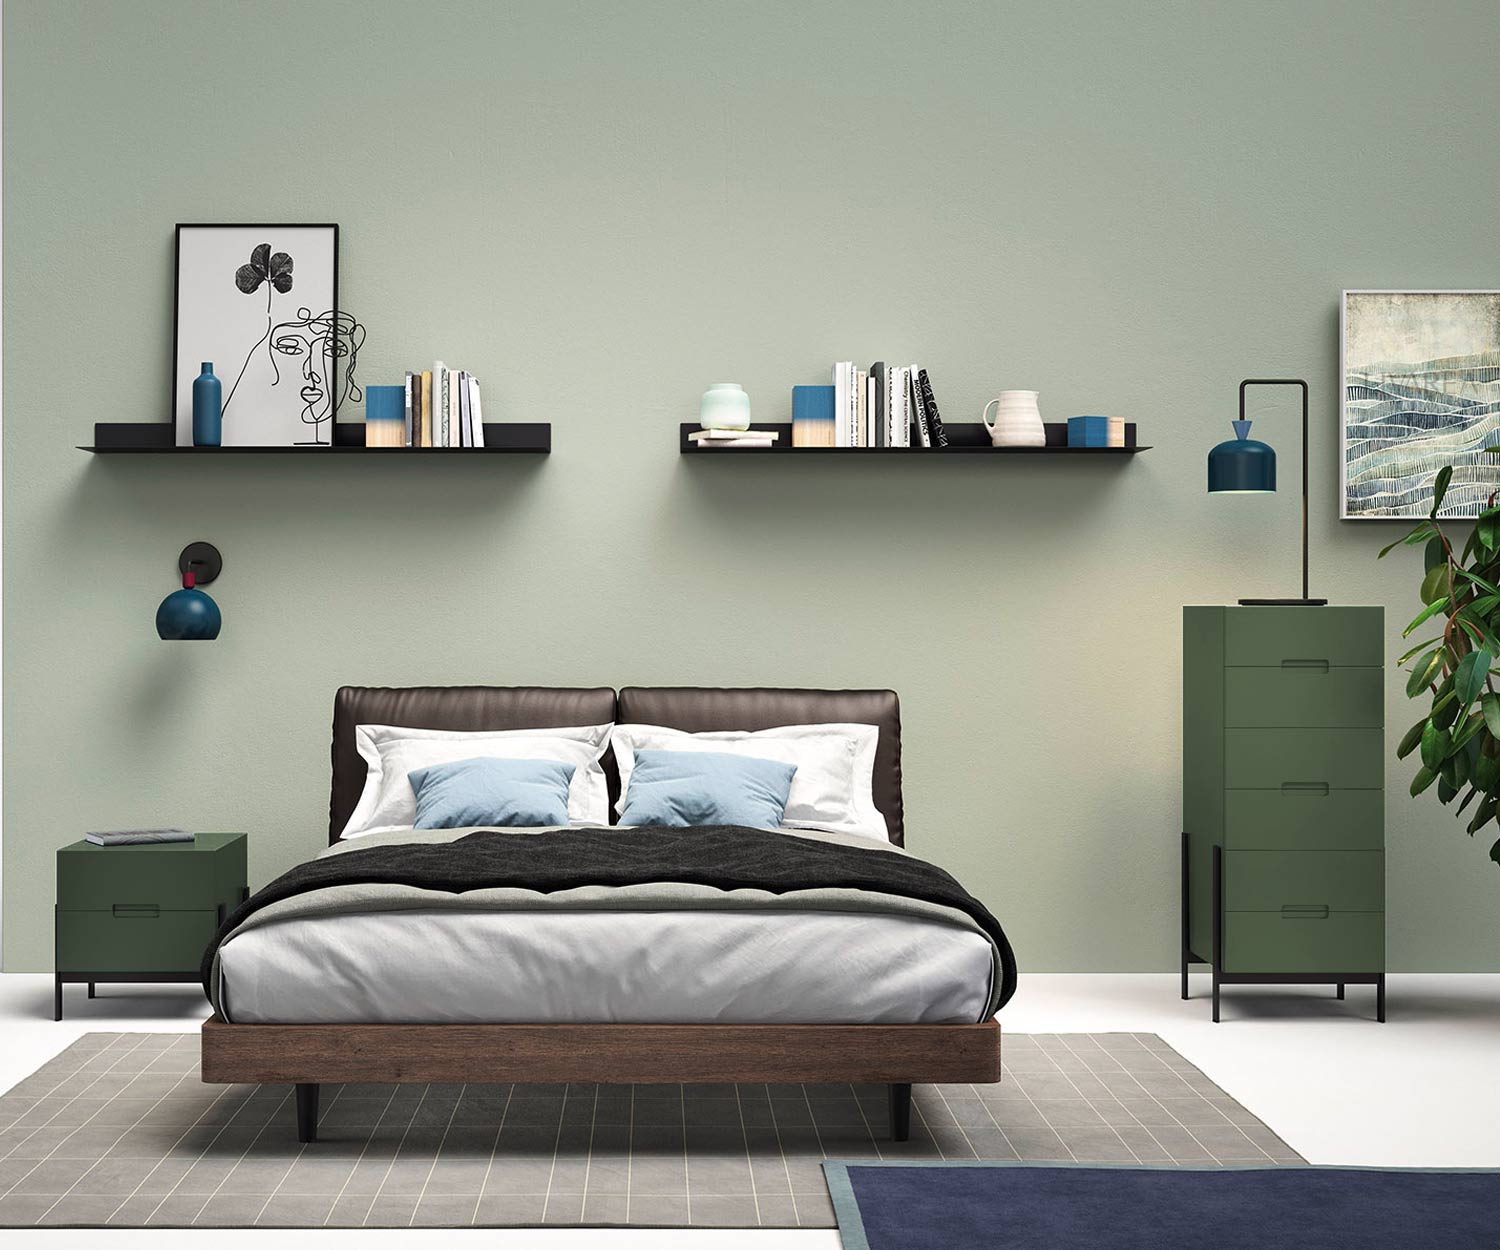 Exclusief Novamobili Float design nachtkastje op pootjes in de slaapkamer